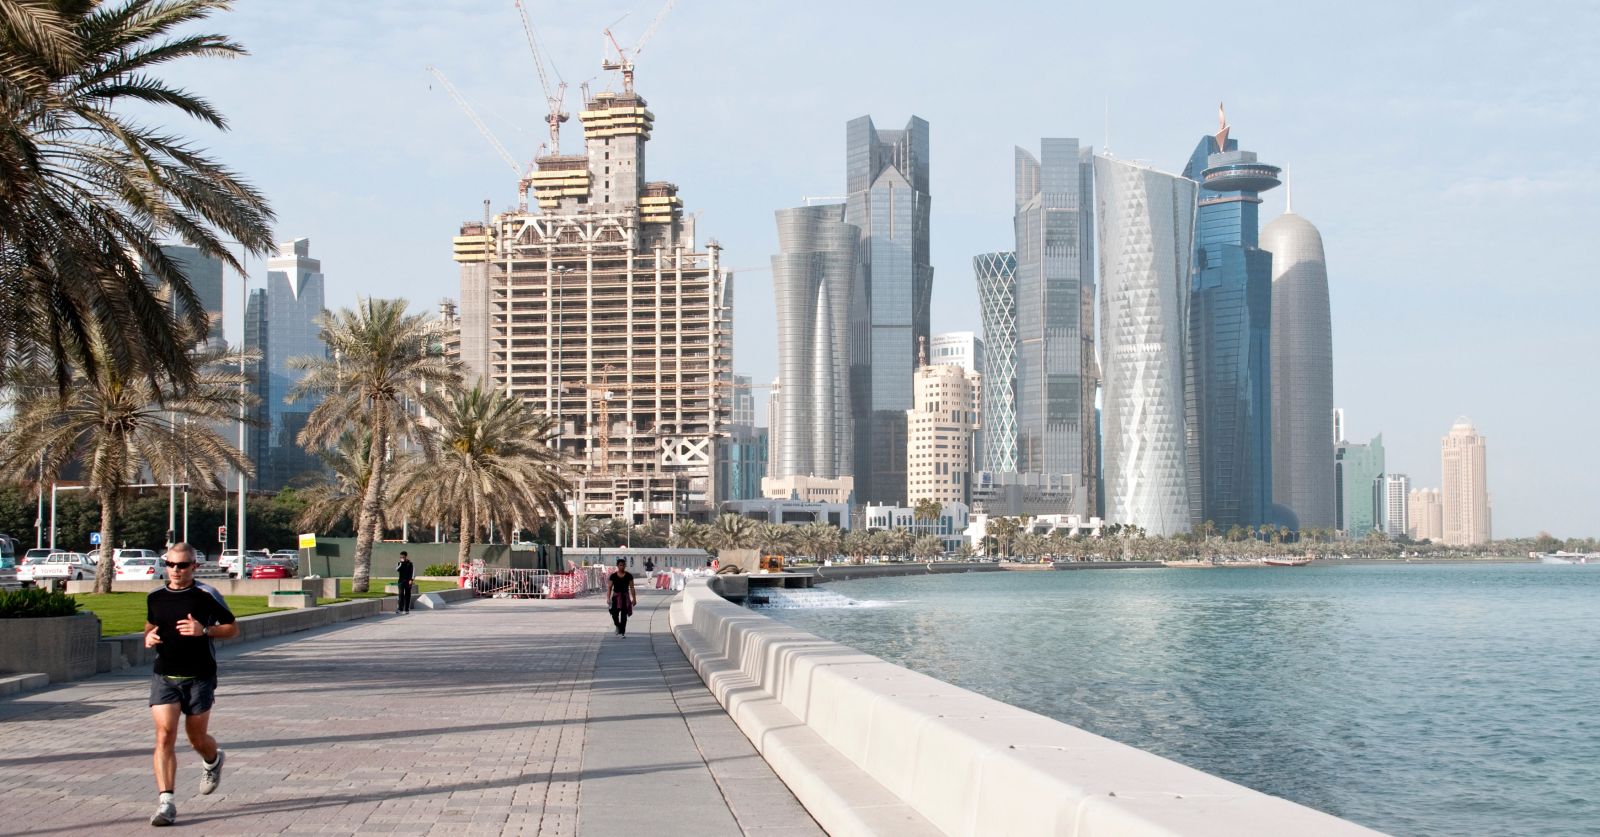 Thủ đô Doha nằm tại bờ vịnh Ả Rập. Đây là một trong những thành phố giàu có bậc nhất và an toàn nhất trên thế giới hiện tại. 